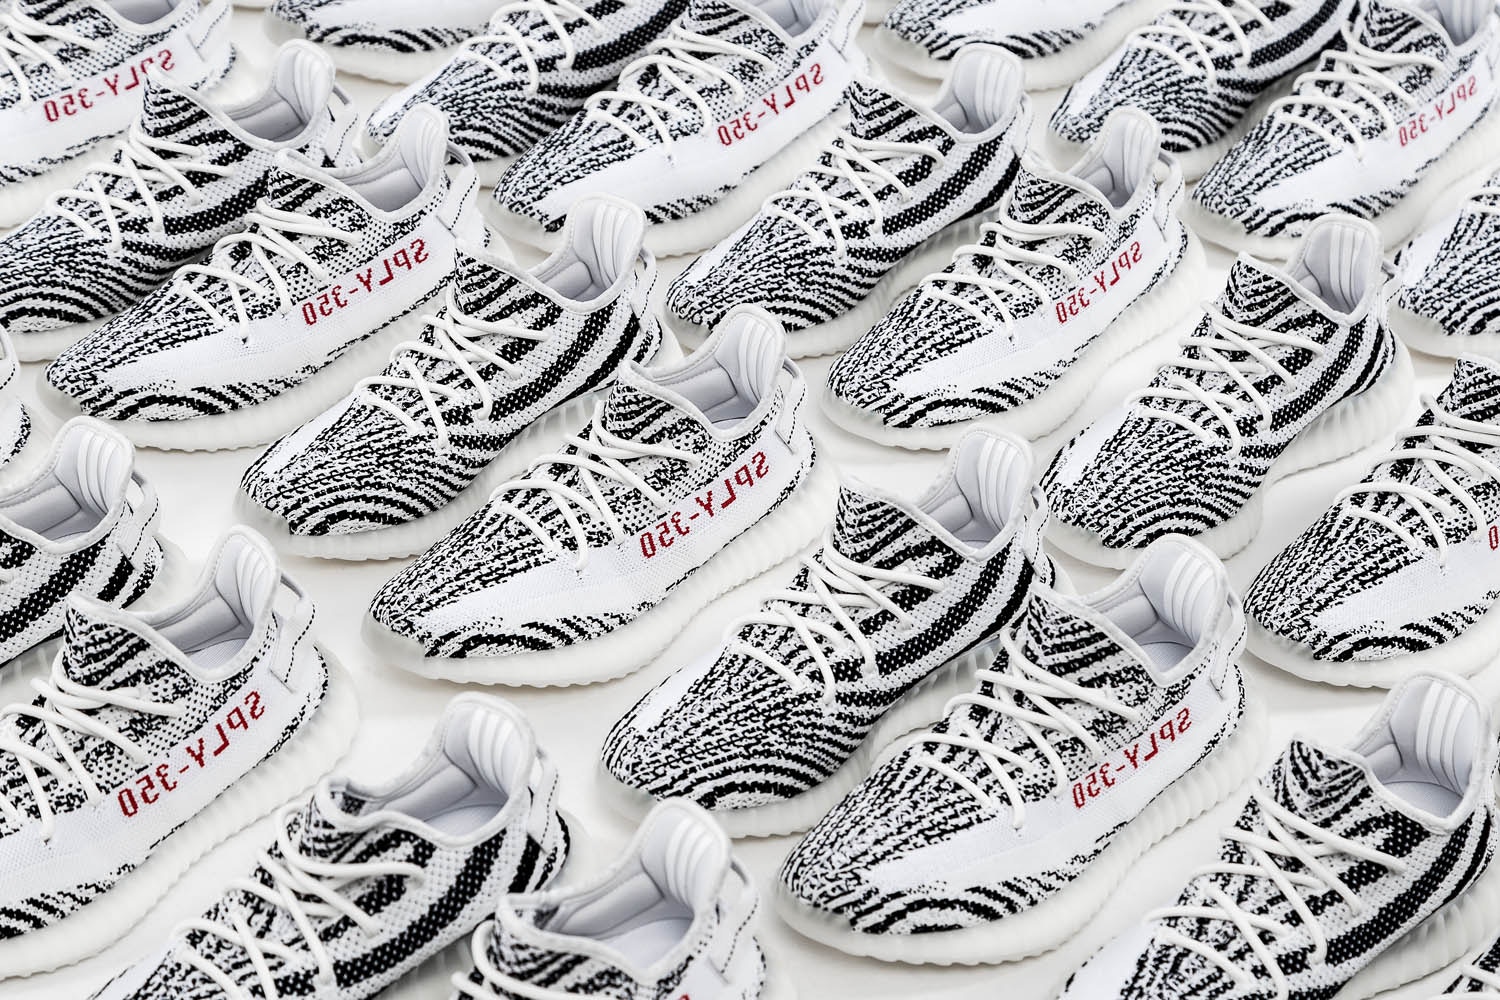 yeezy-zebra-adidas